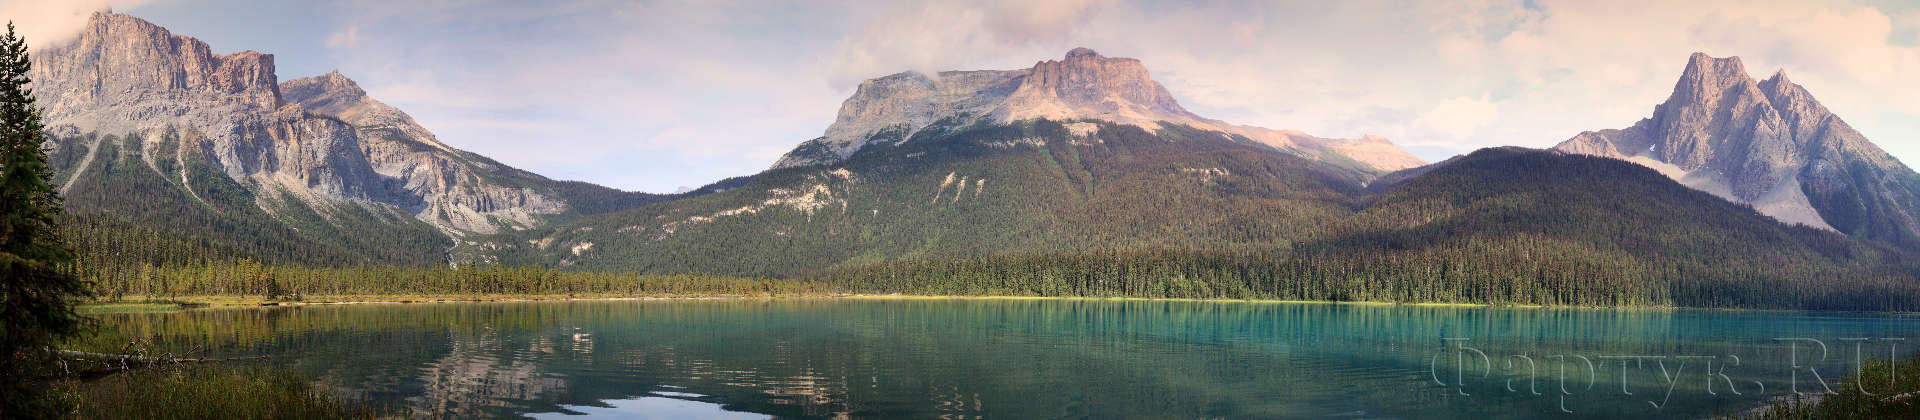 Озеро на фоне гор